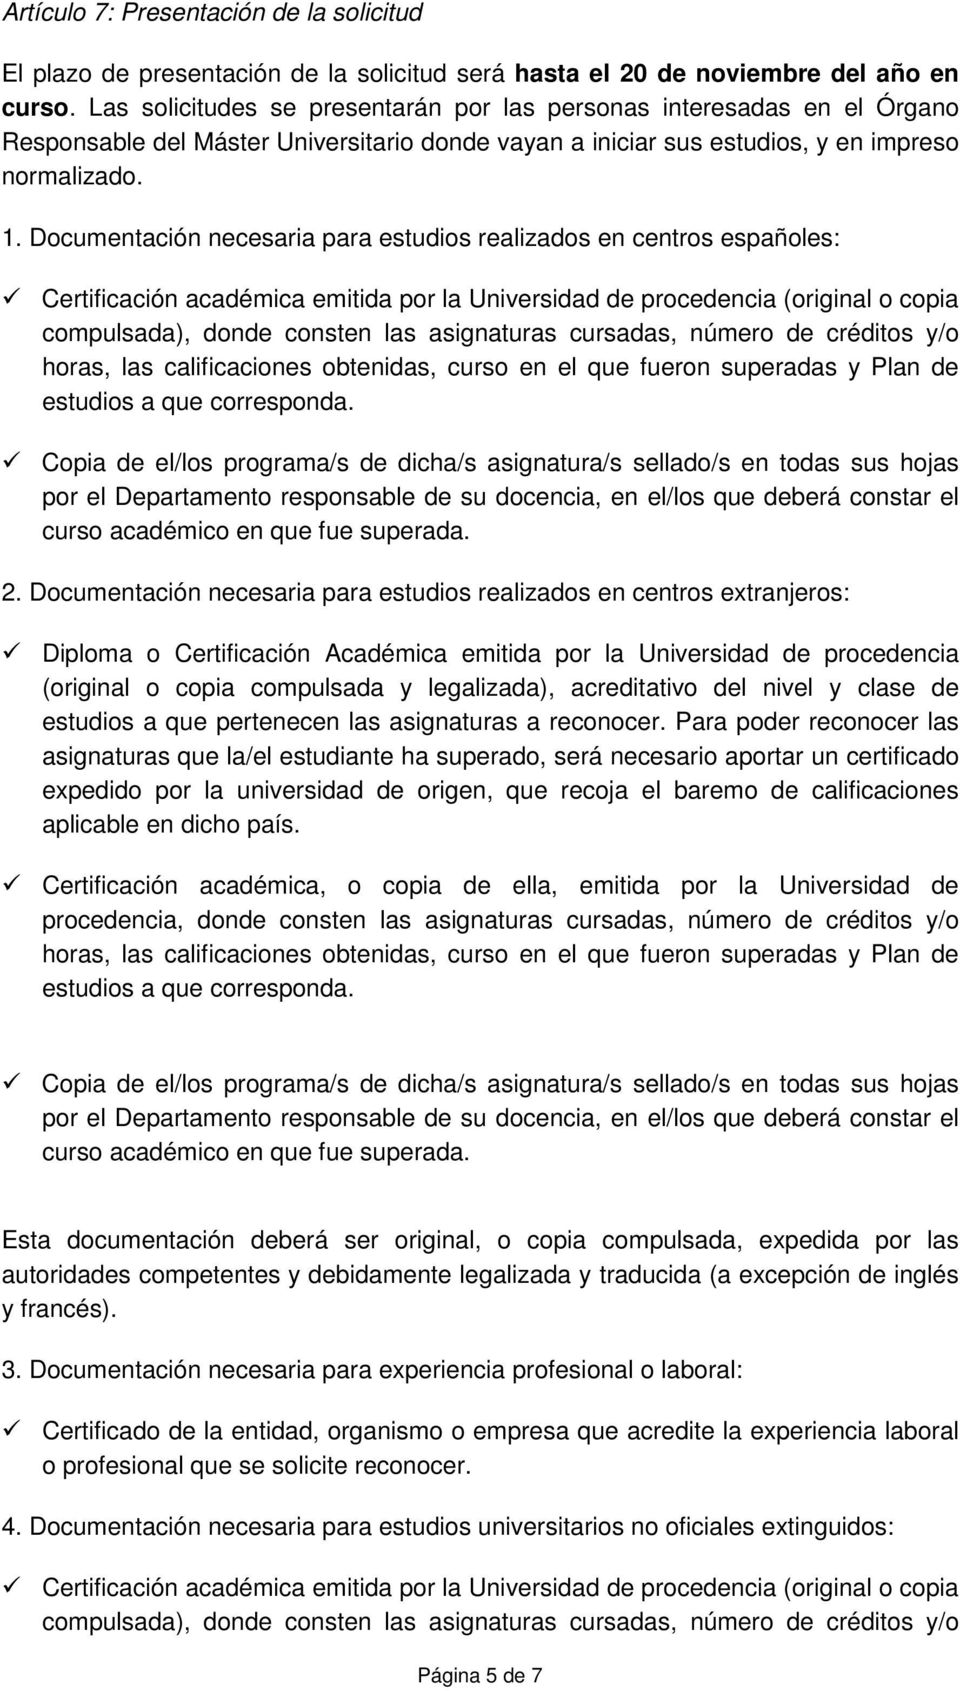 Documentación necesaria para estudios realizados en centros españoles: Certificación académica emitida por la Universidad de procedencia (original o copia compulsada), donde consten las asignaturas